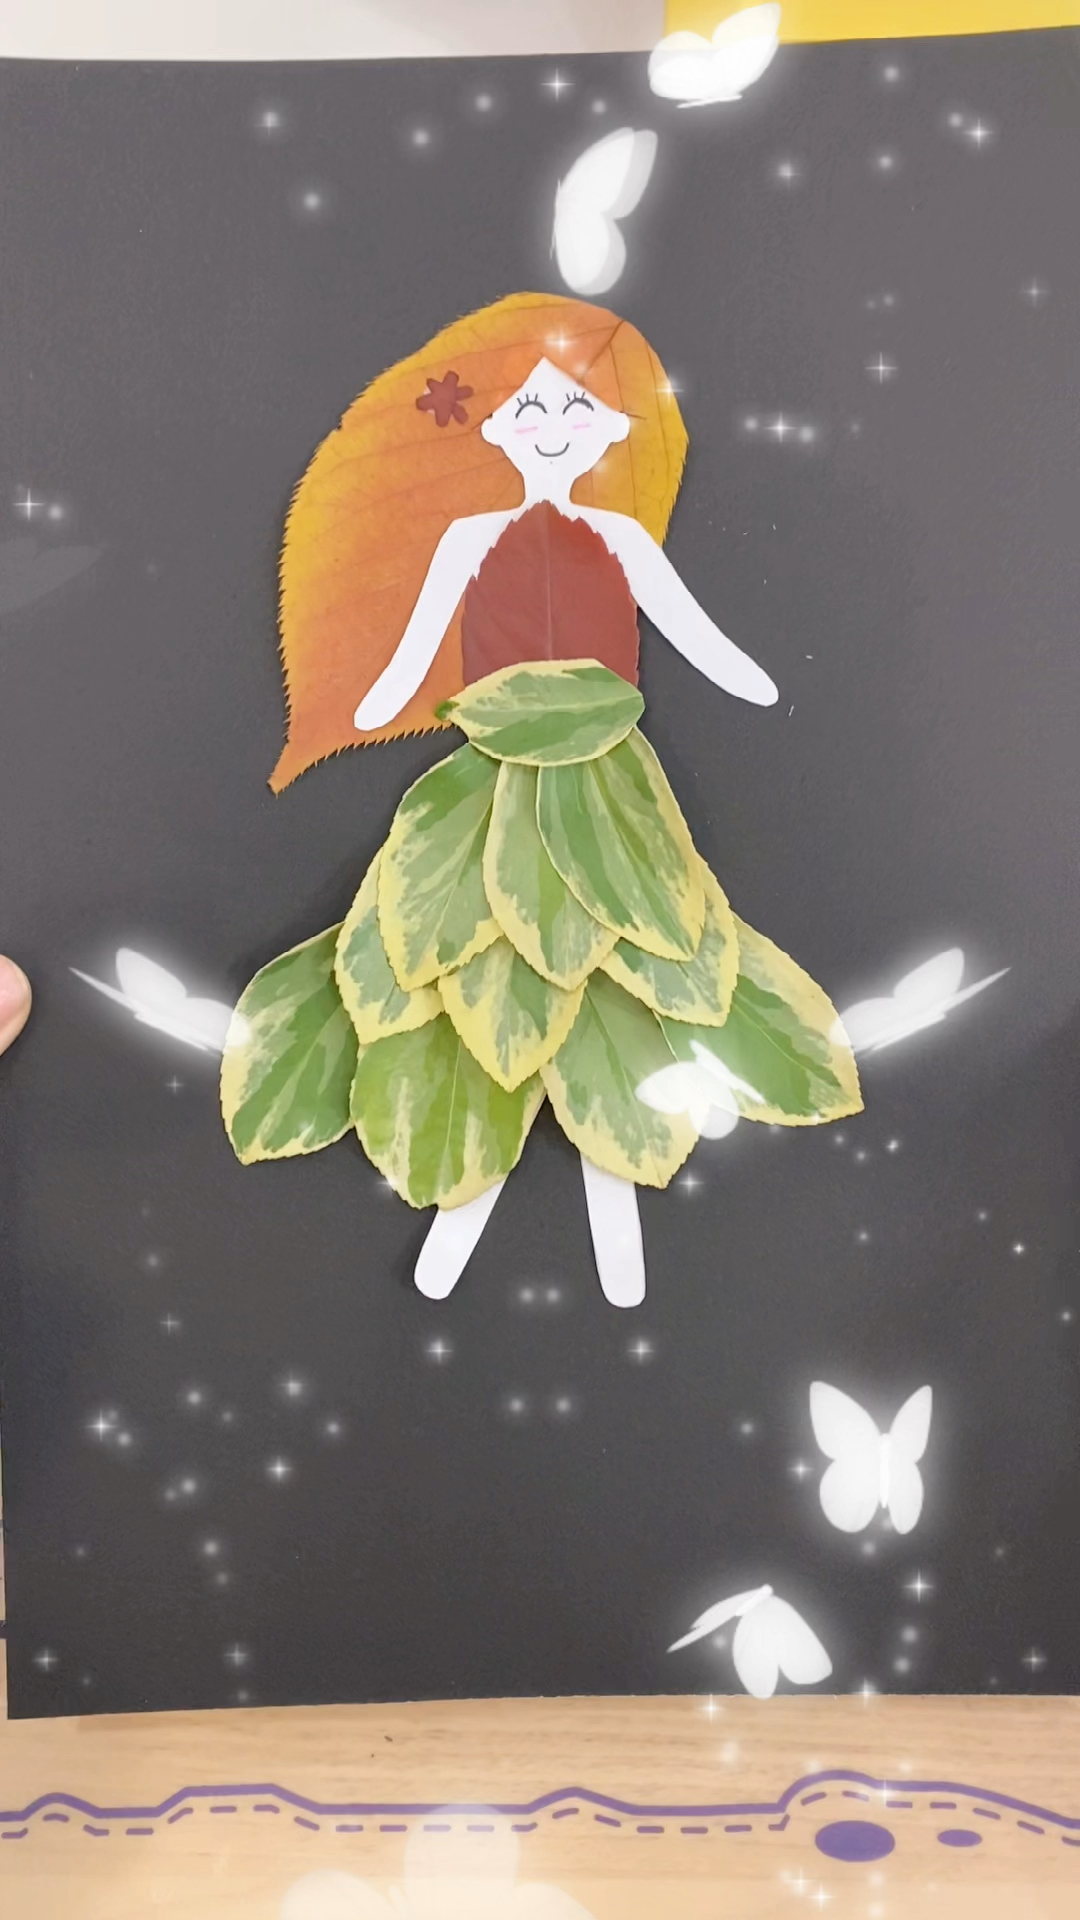 手工制作又做了一款超级漂亮的小公主树叶贴画赶快帮小朋友收藏起来